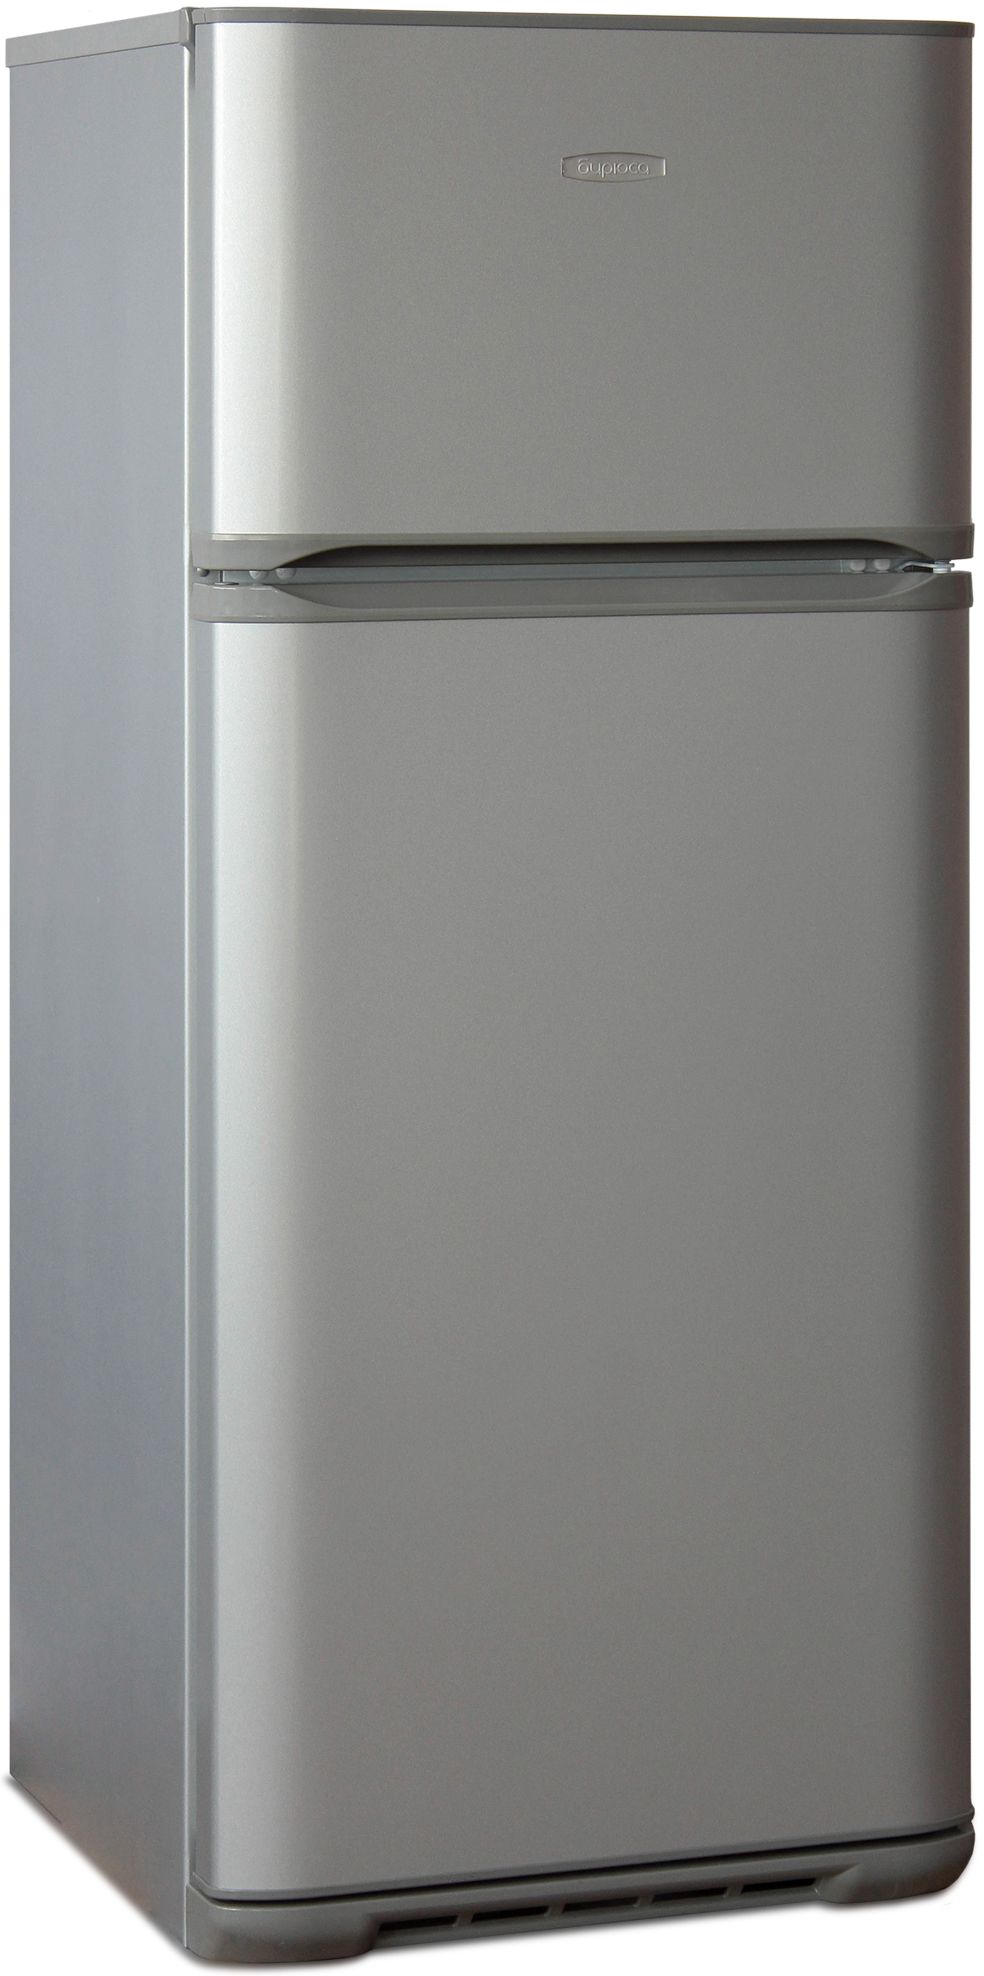 холодильник бирюса 136, купить в Красноярске холодильник бирюса 136,  купить в Красноярске дешево холодильник бирюса 136, купить в Красноярске минимальной цене холодильник бирюса 136